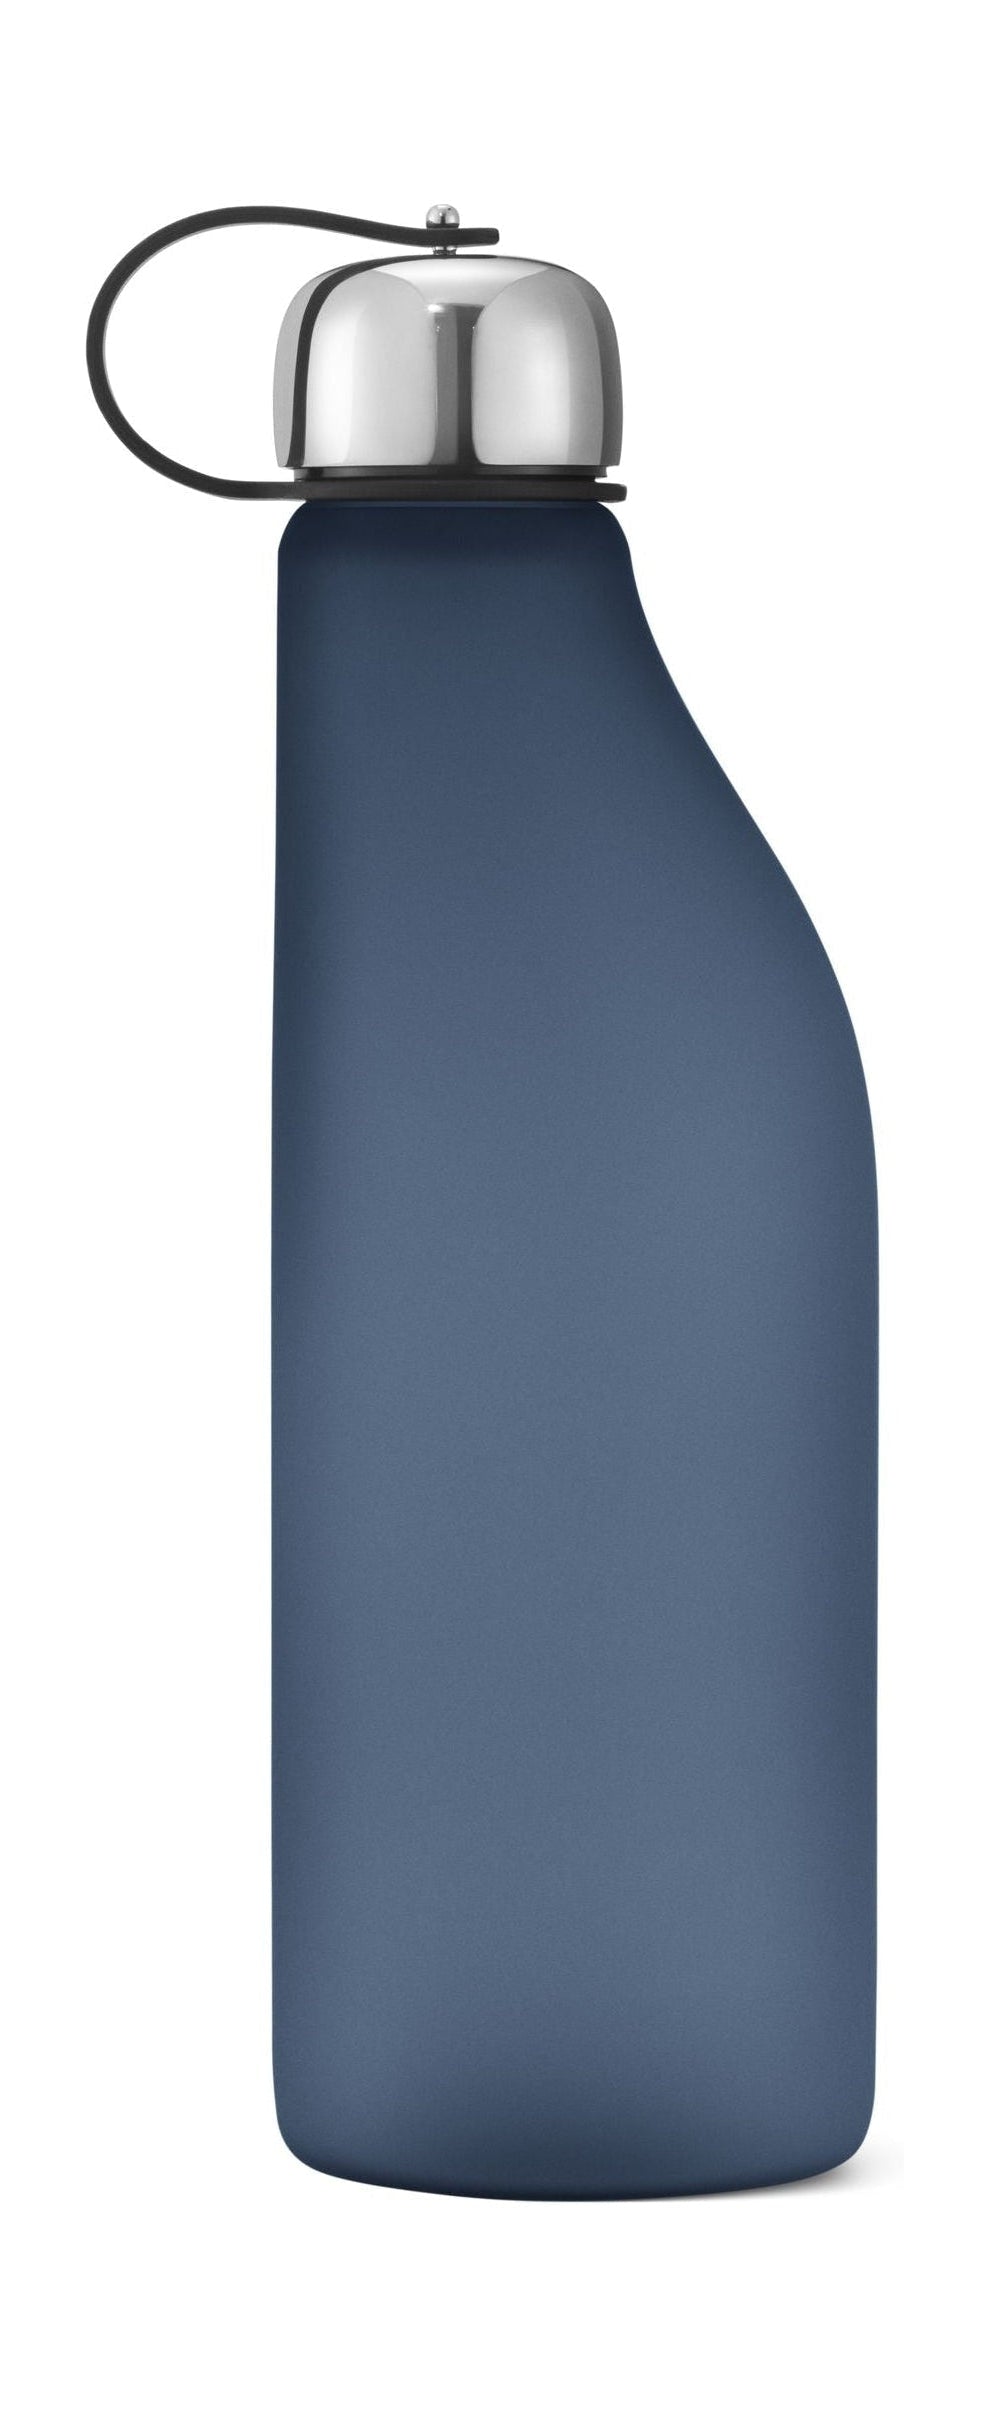 Georg Jensen Taivaan juomapullo 500 ml, sininen